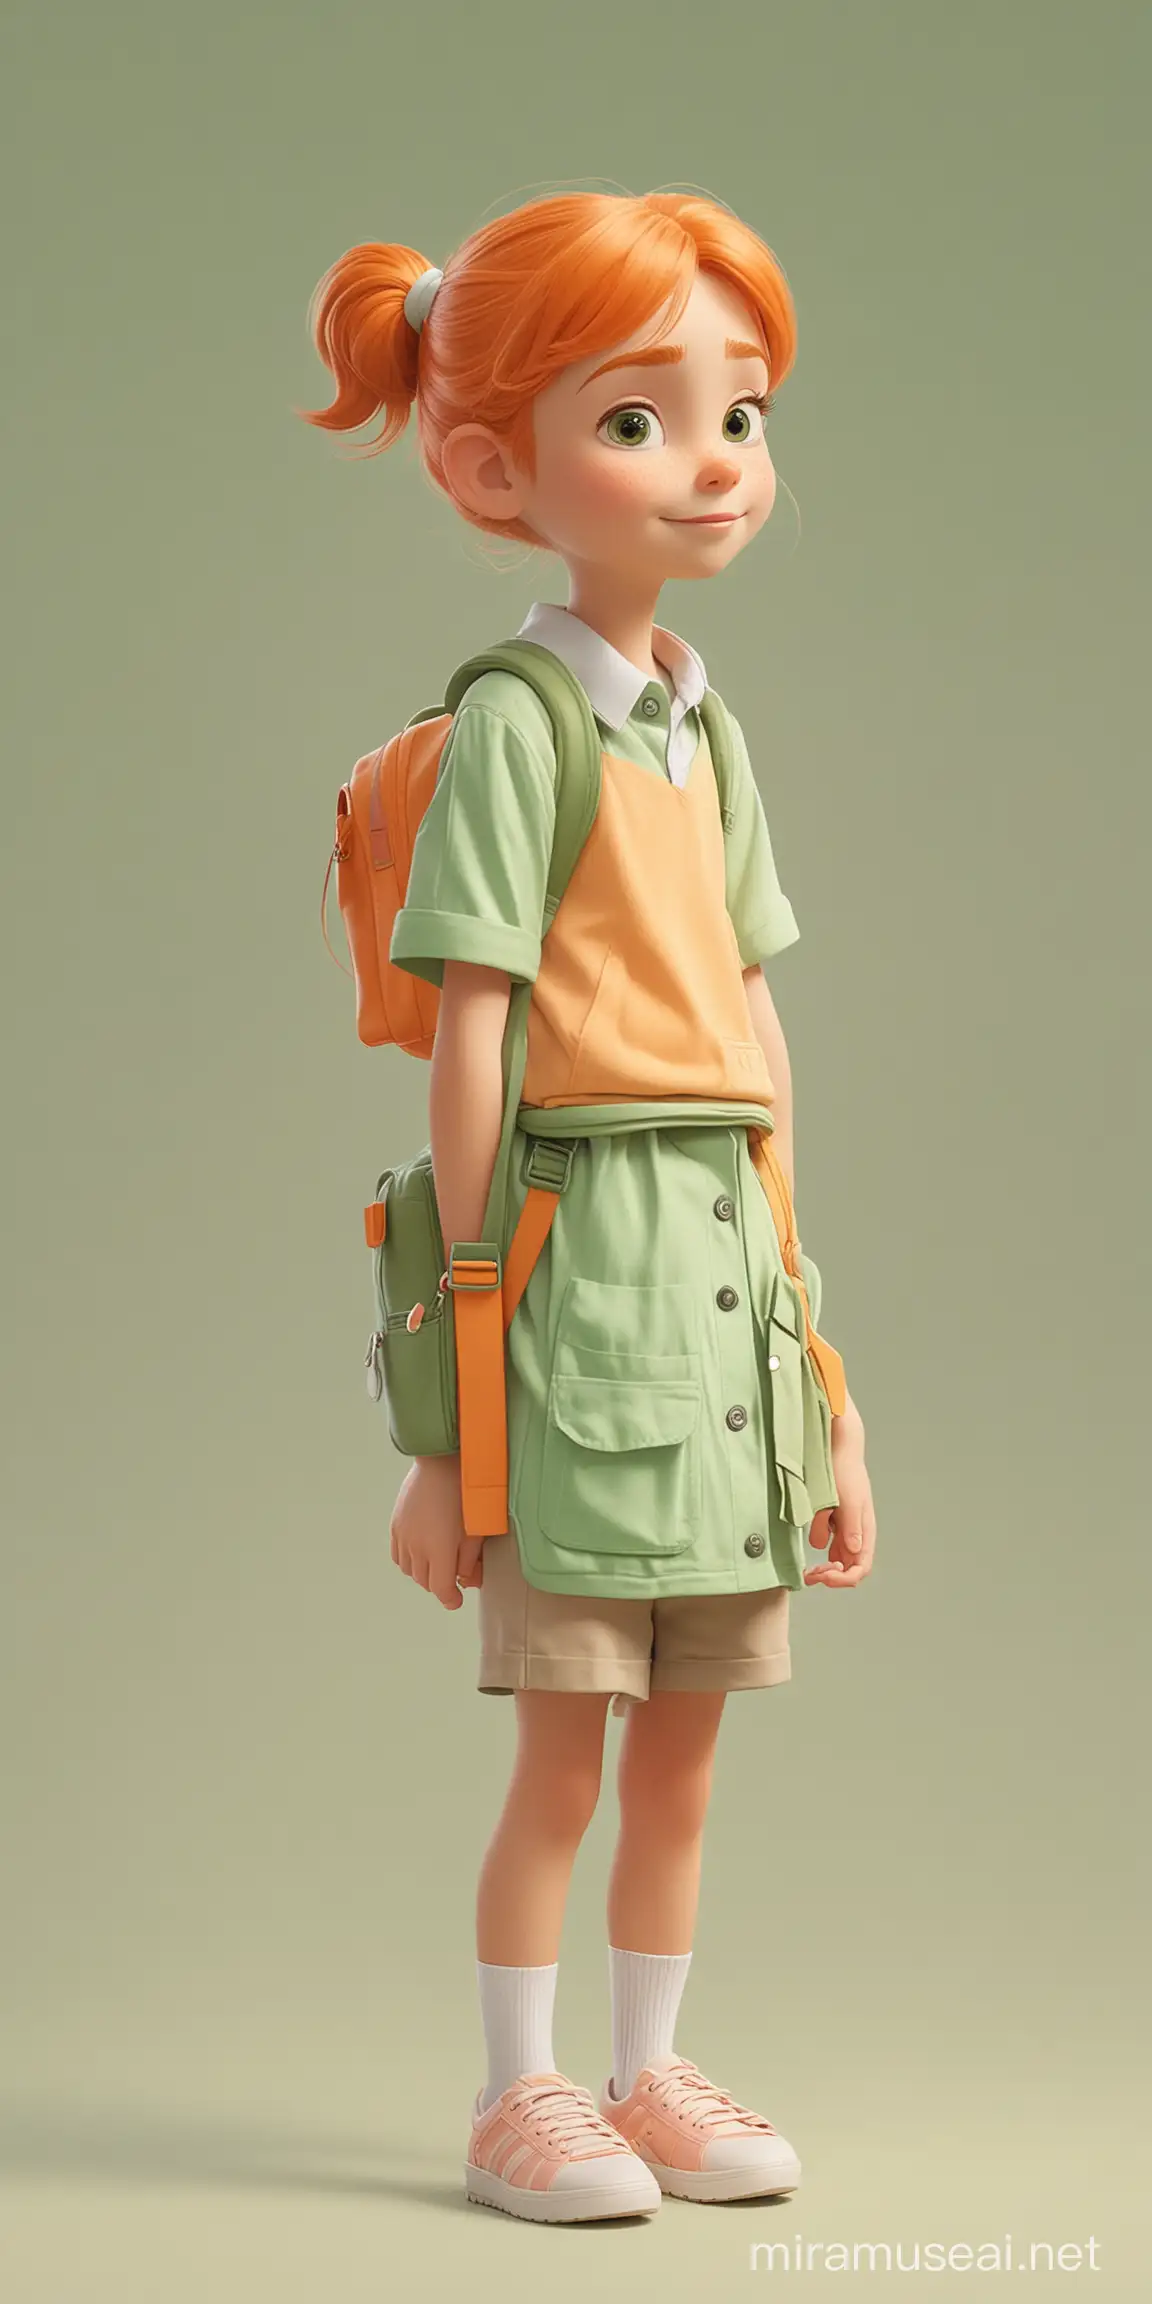 Ребёнок идёт в школу. Мультипликационный стиль Disney. Пастельные оттенки. Сплошная заливка фона. Оранжевый, белый, зелёный.